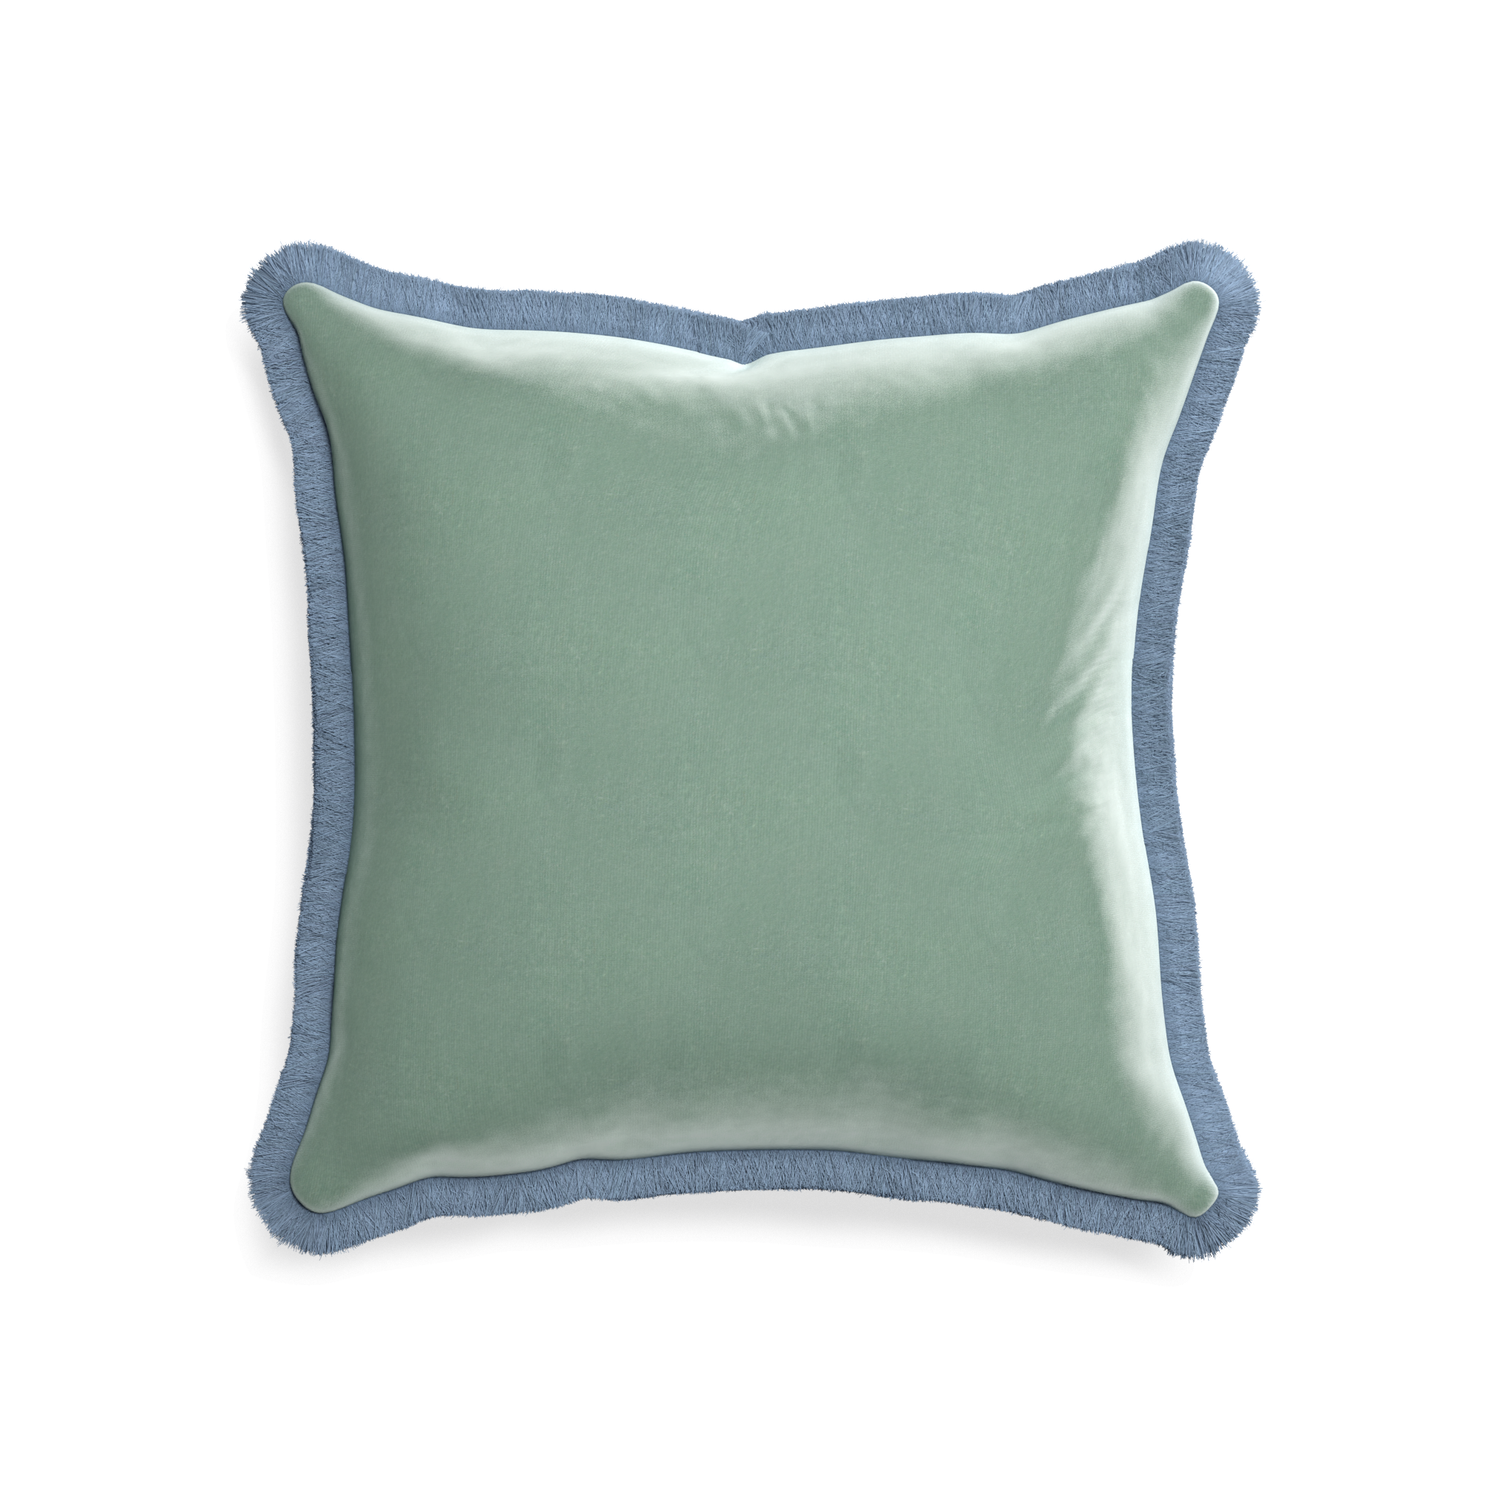 square blue green velvet pillow with sky blue fringe